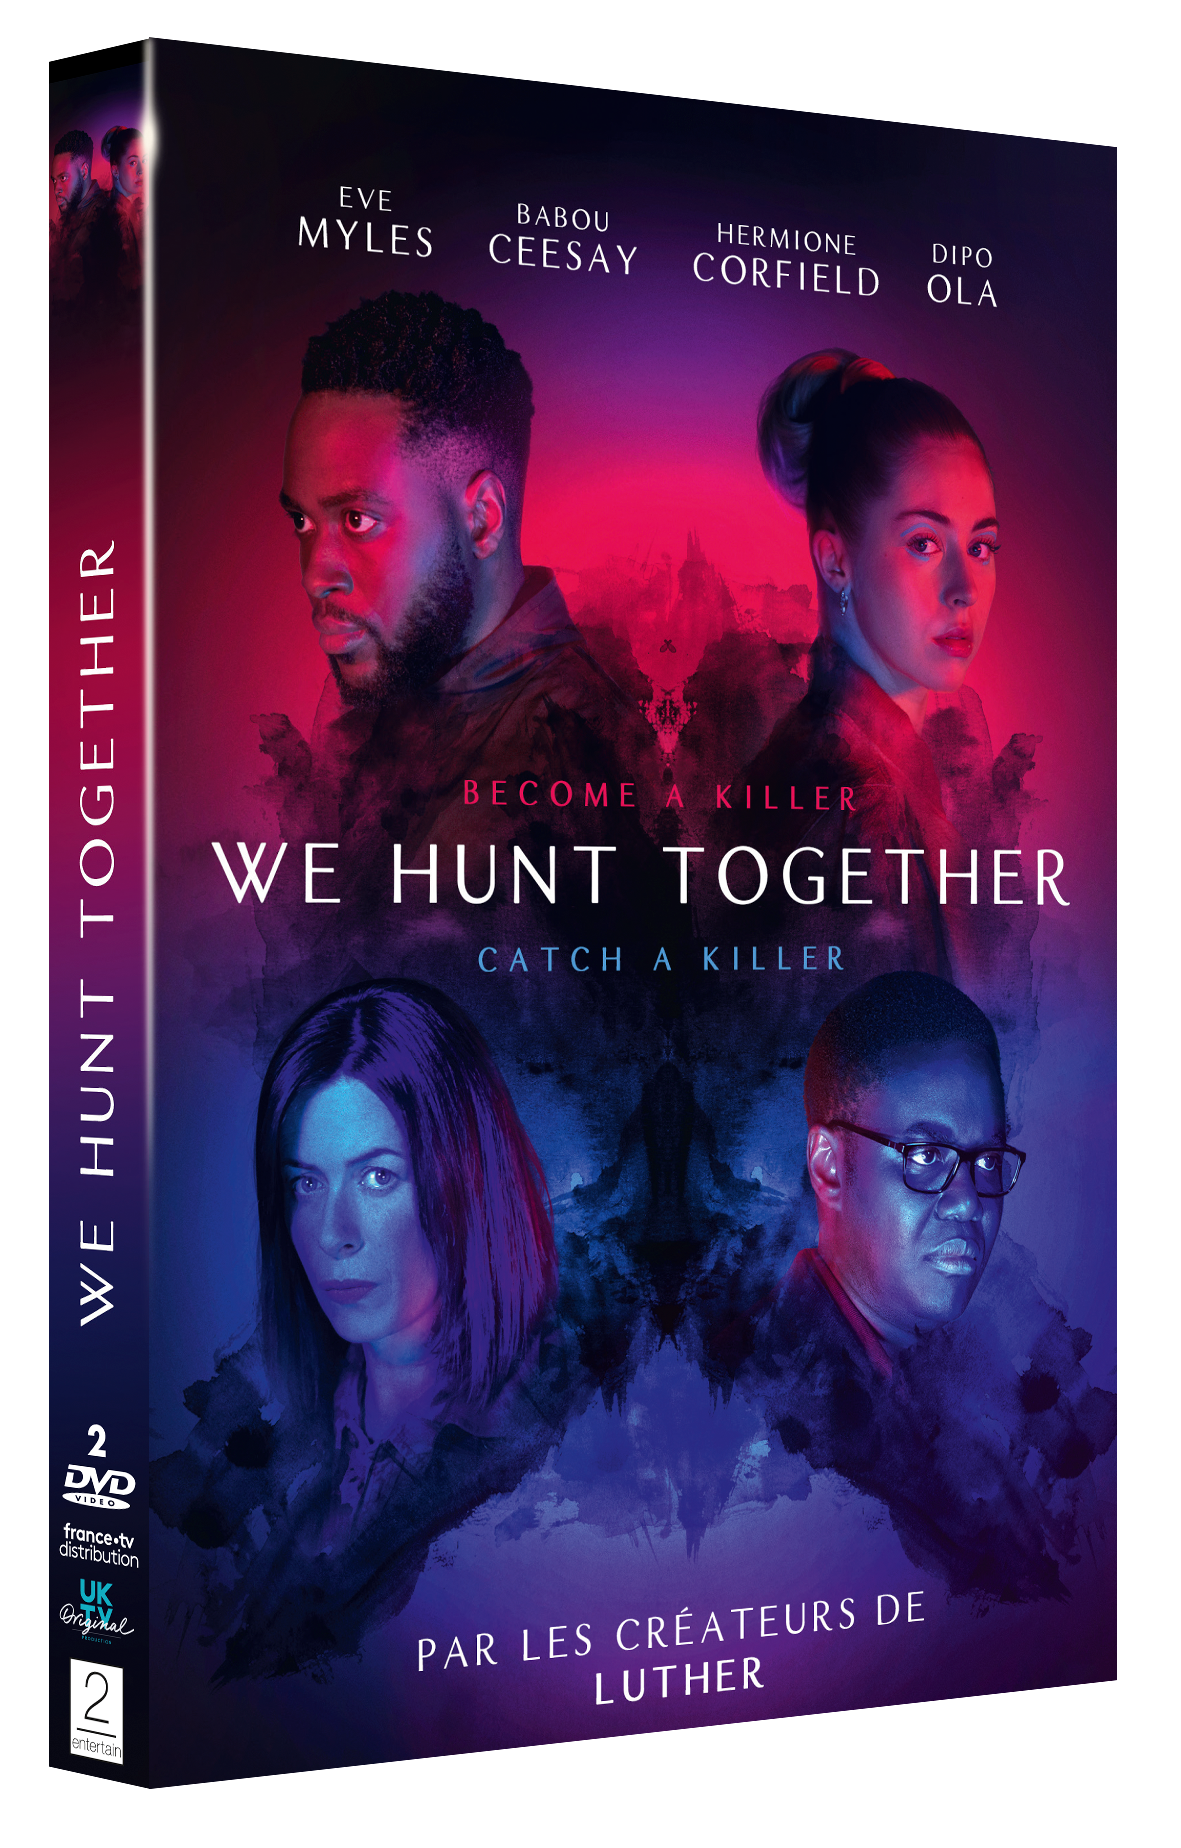 We Hunt Together DVD